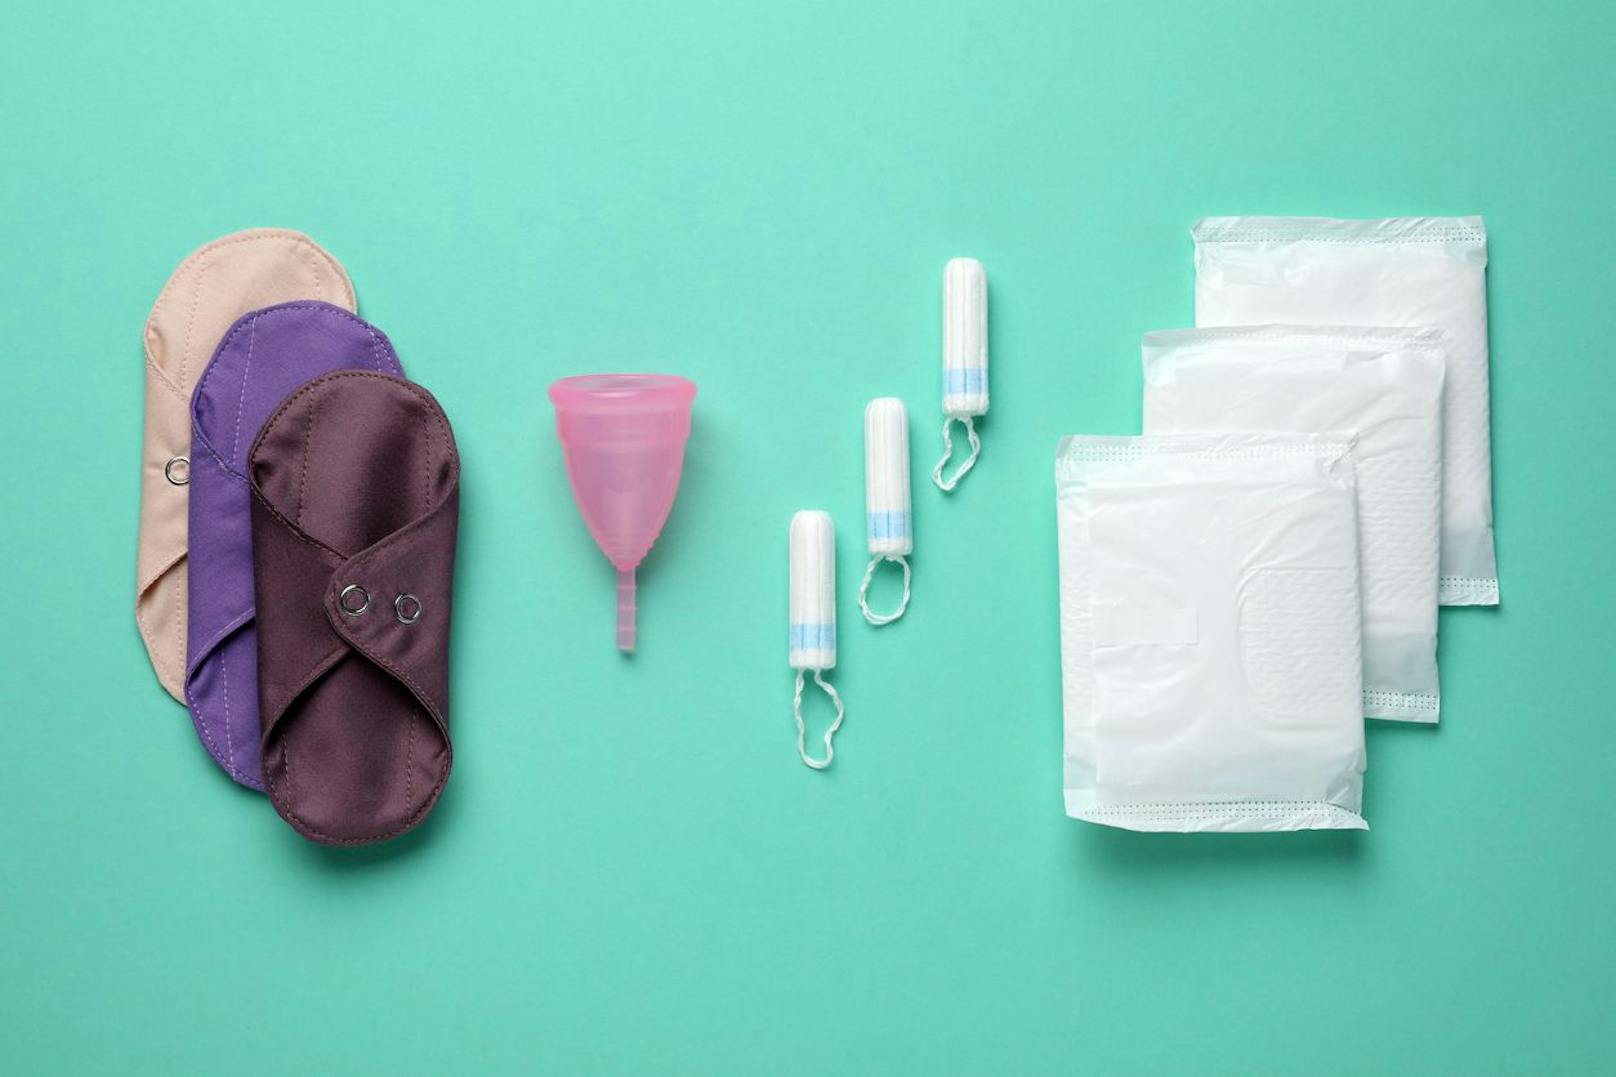 Für die meisten Frauen sind Binden und Tampons eine unangenehme Sache, die jedoch mit Menstruationstassen oder Periodenunterwäsche ersetzt werden können.